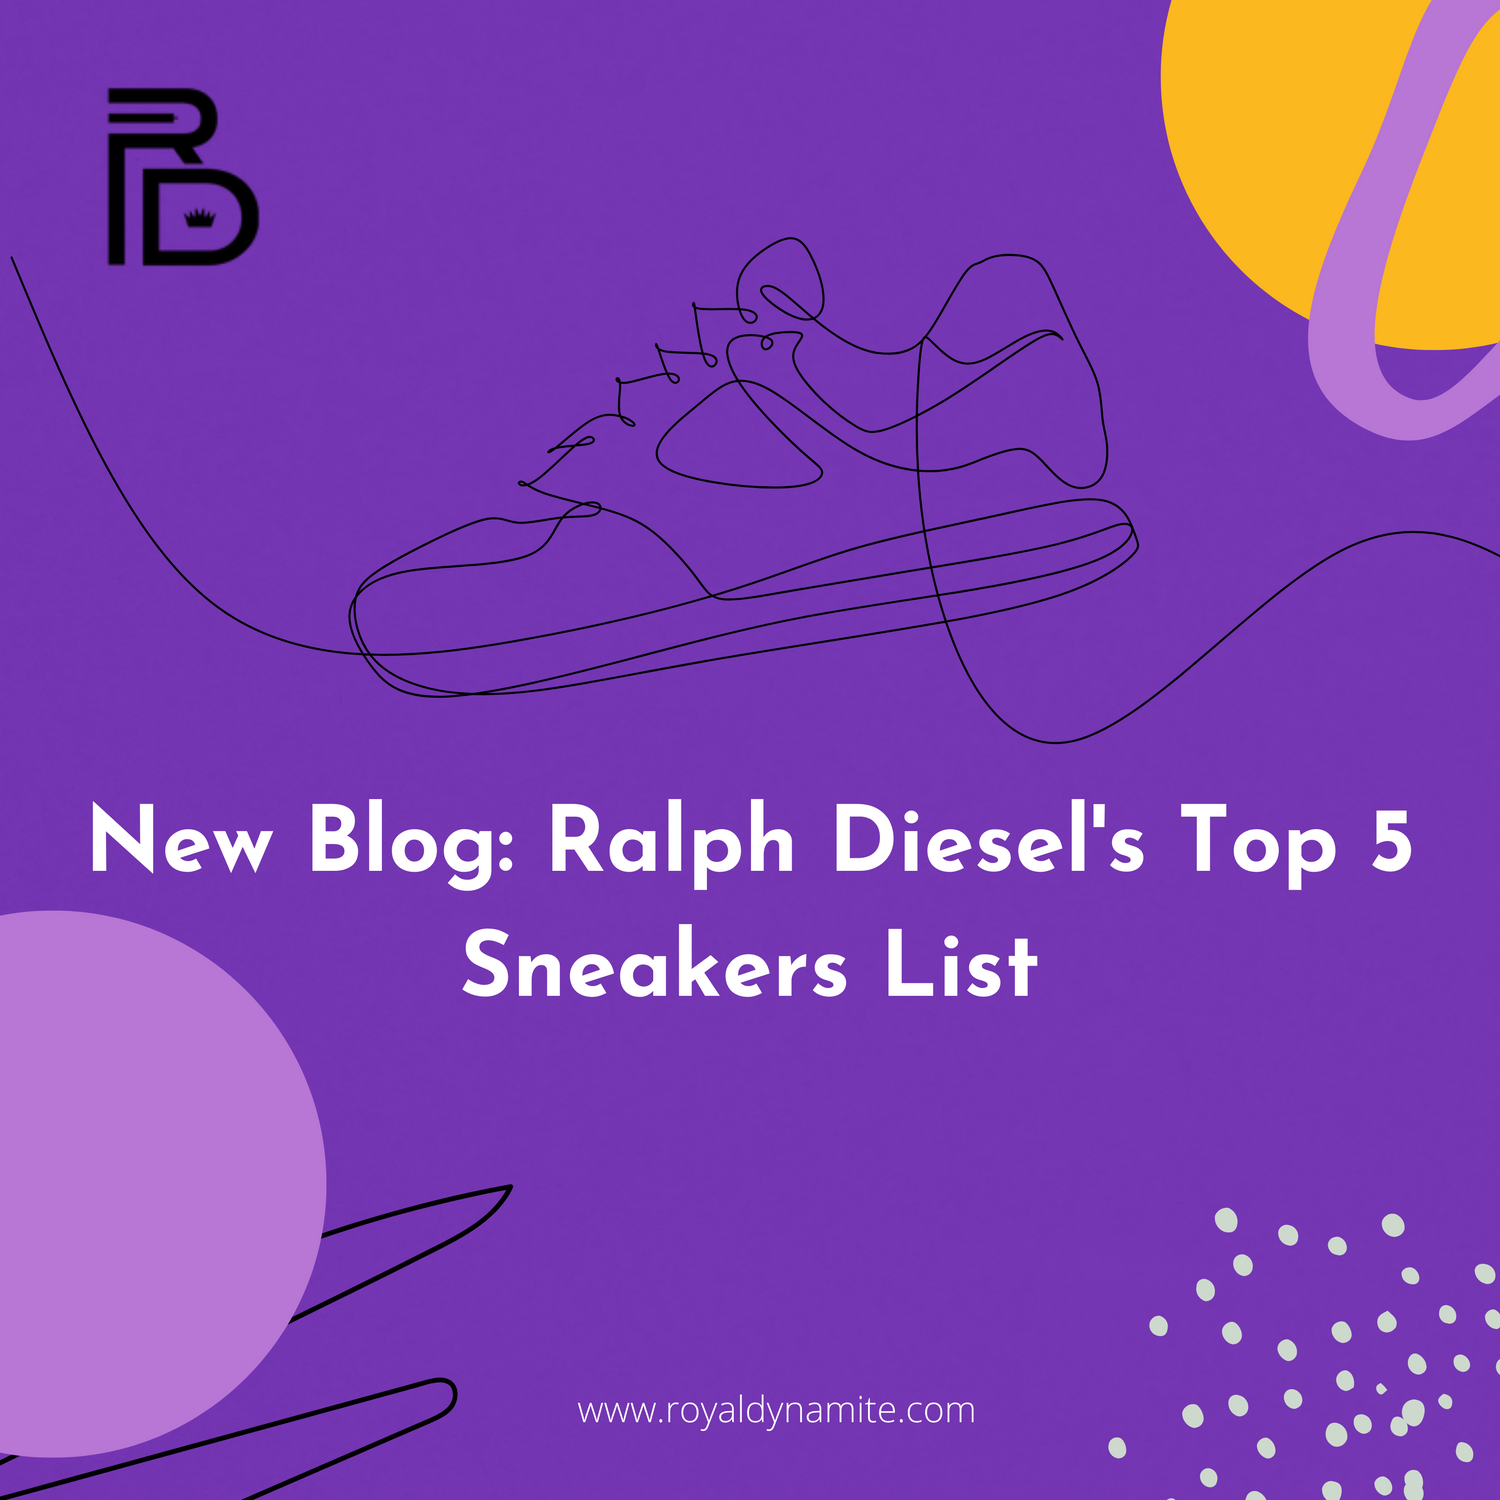 Ralph Diesel's Top 5 Sneakers